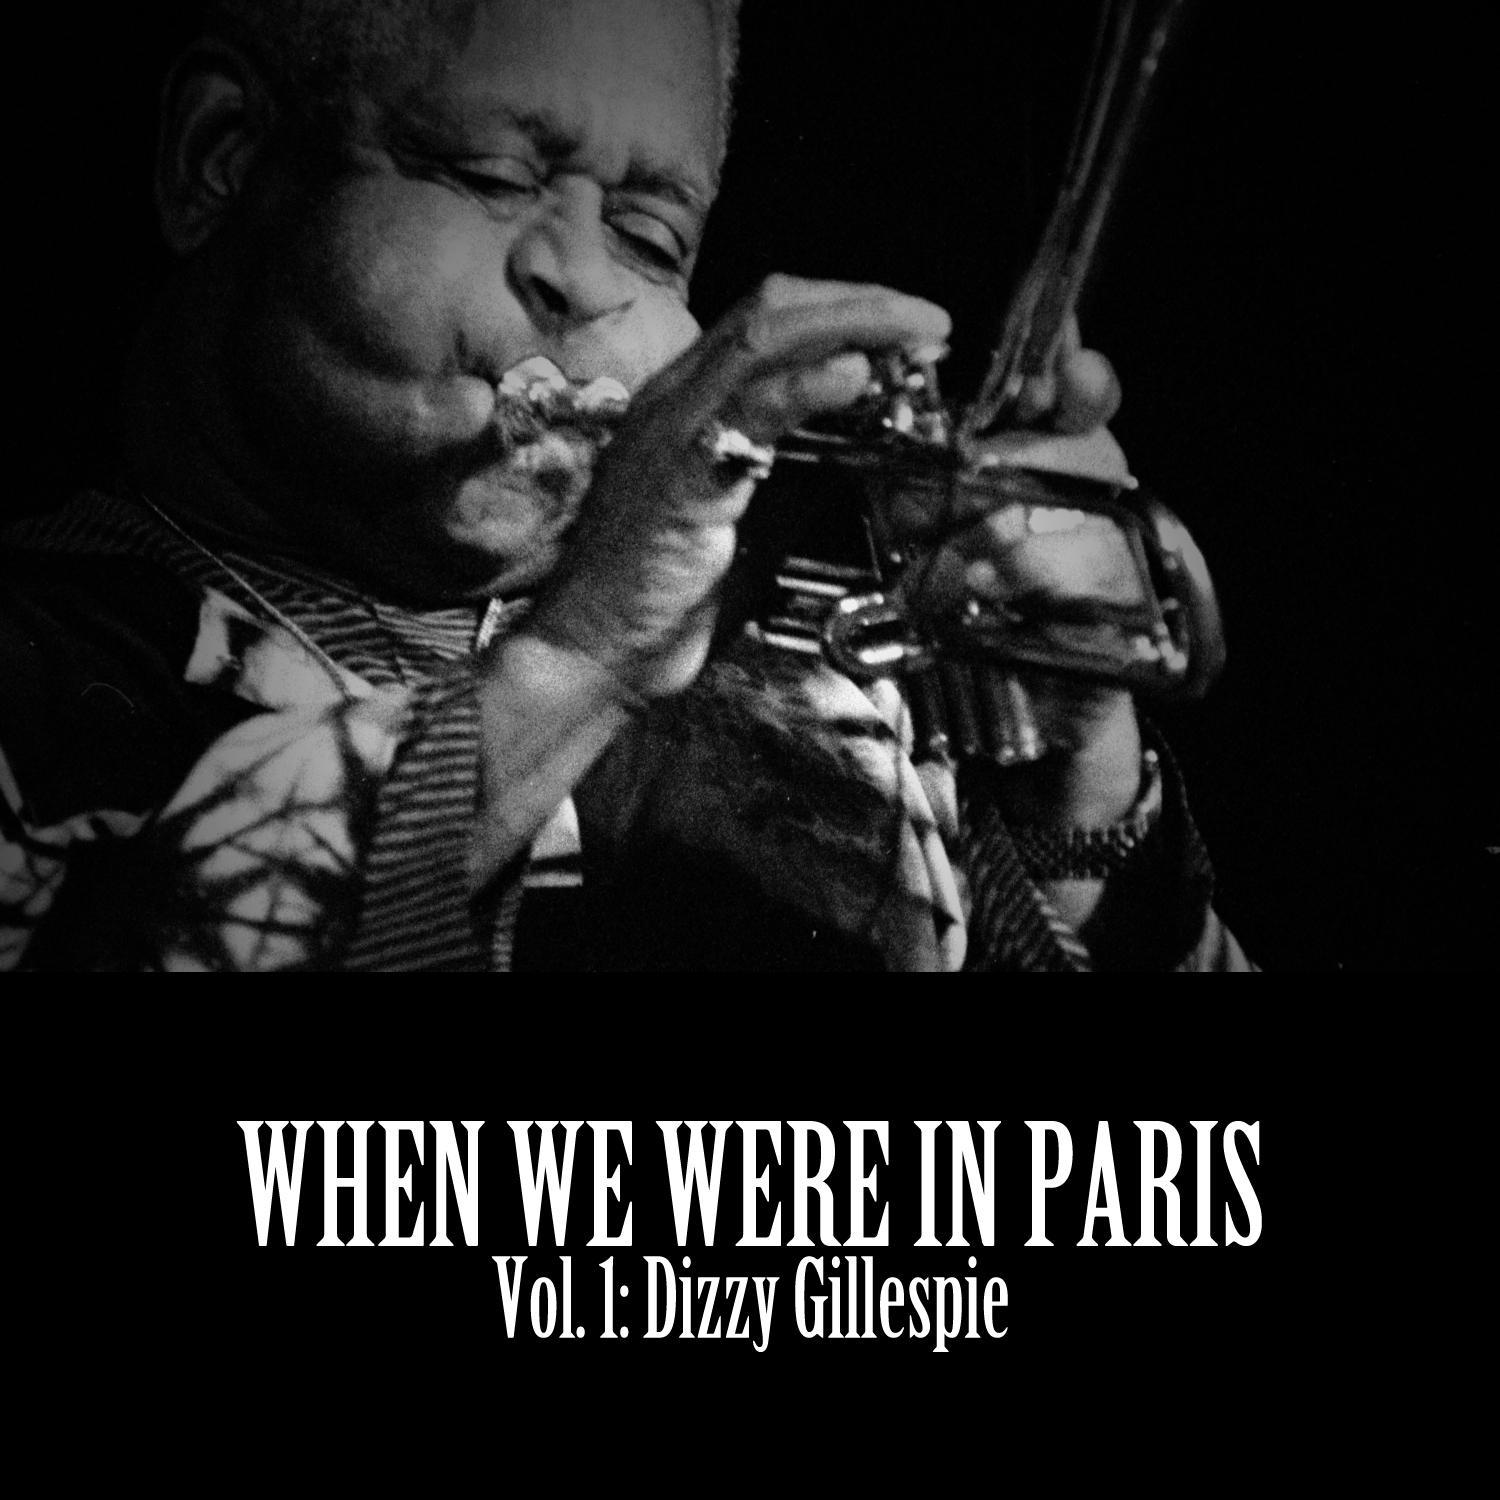 When We Were in Paris, Vol. 1: Dizzy Gillespie